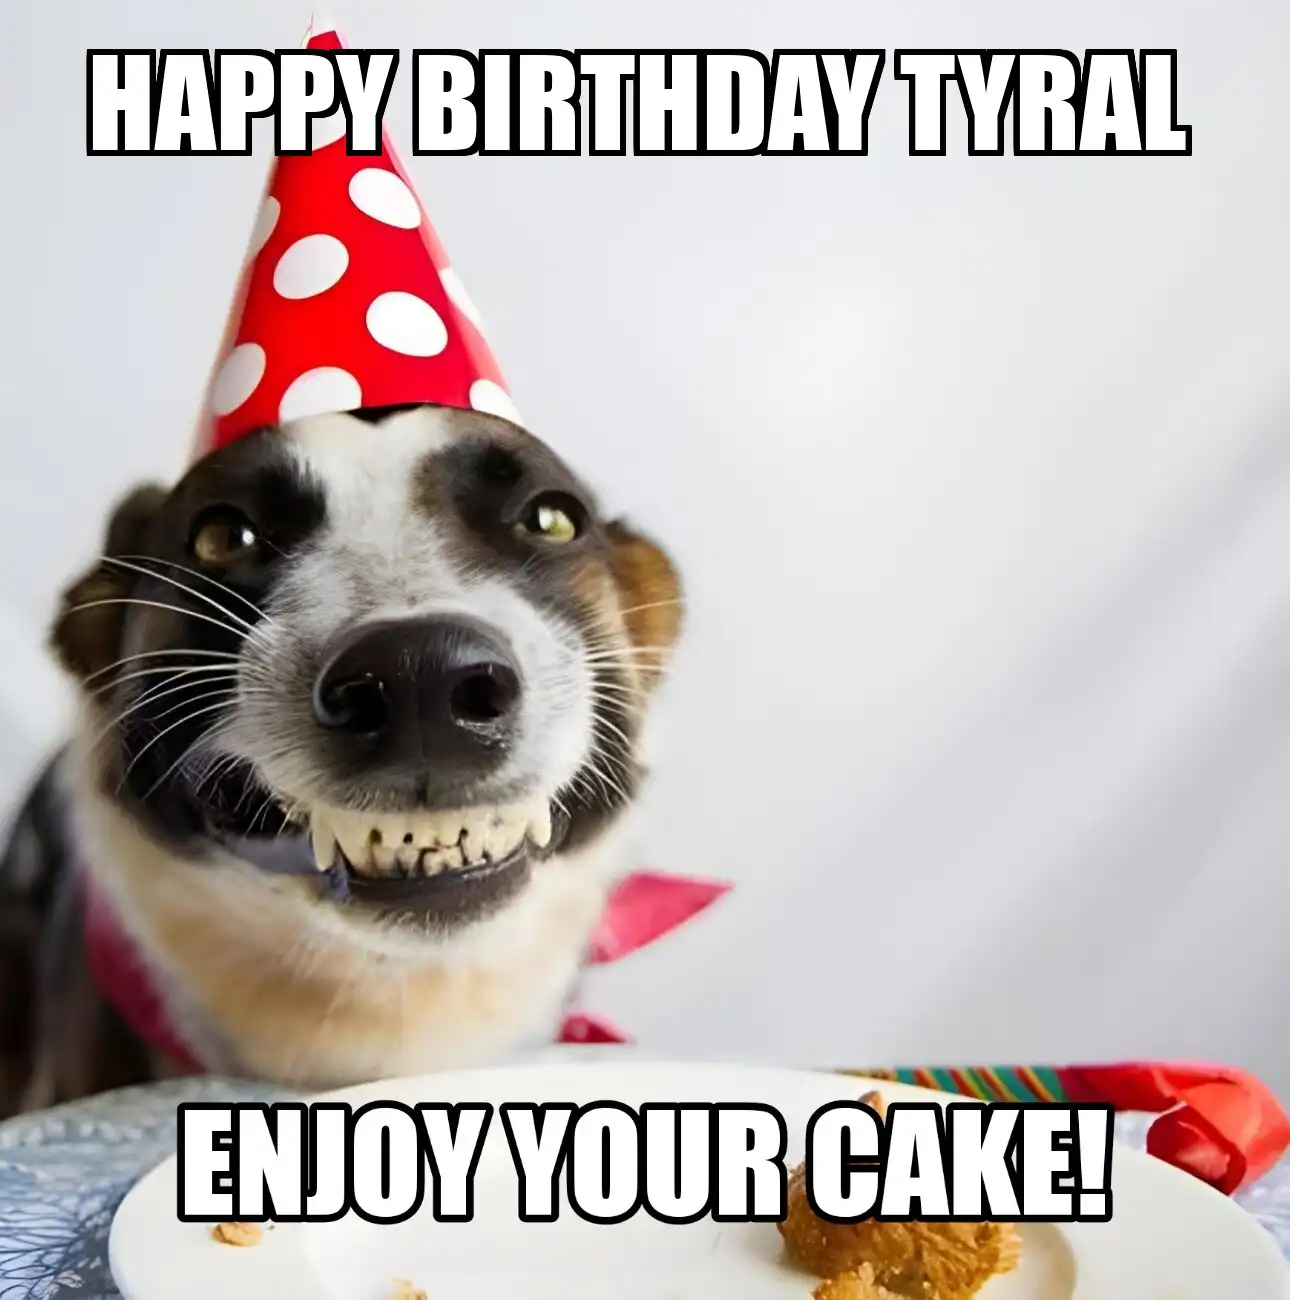 Happy Birthday Tyral Enjoy Your Cake Dog Meme